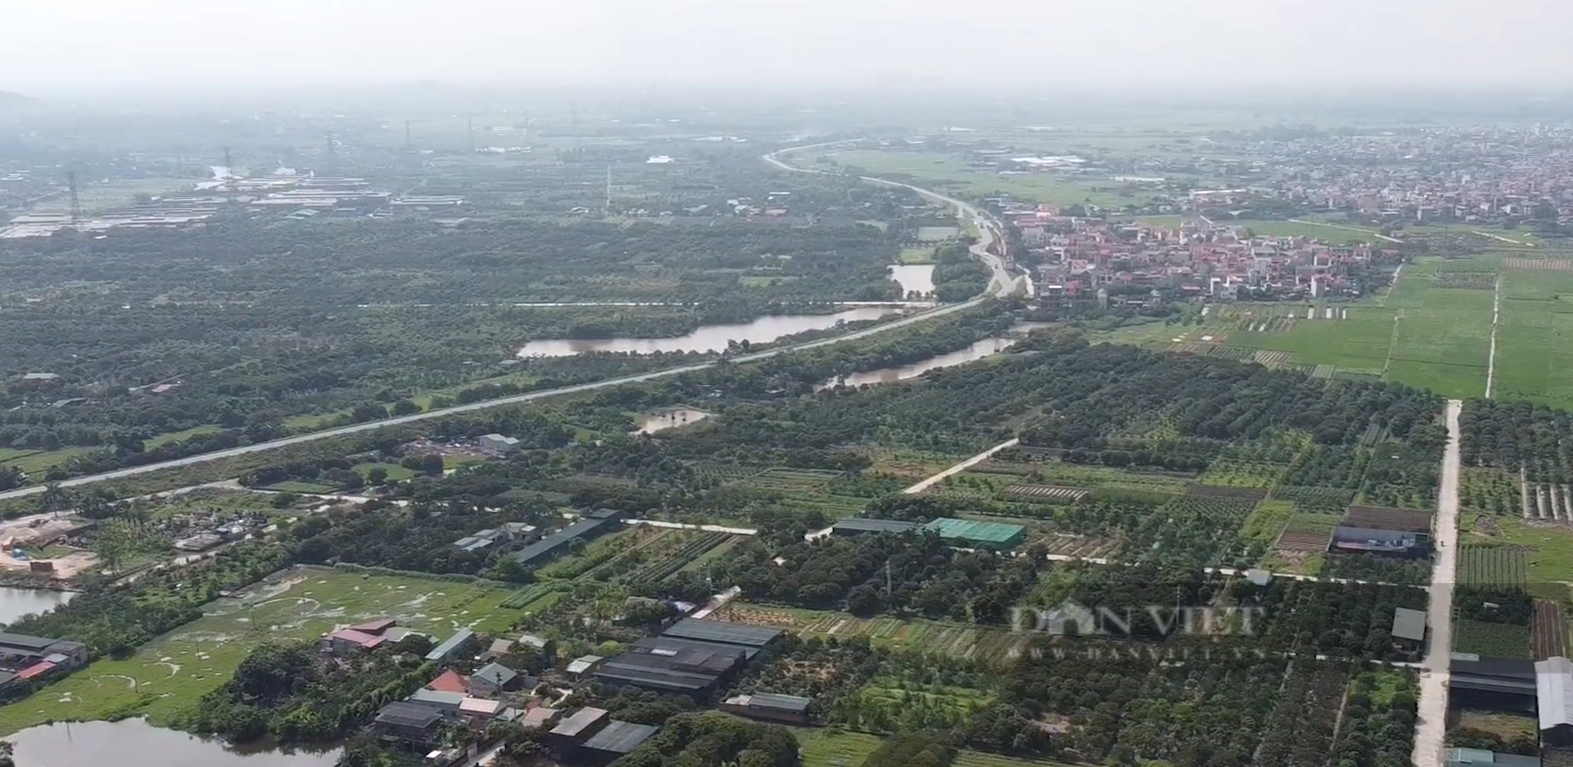 Dự án Vành đai 4: Huyện Hoài Đức (Hà Nội) thông báo vị trí thu hồi đất trong tháng 10/2022 - Ảnh 1.